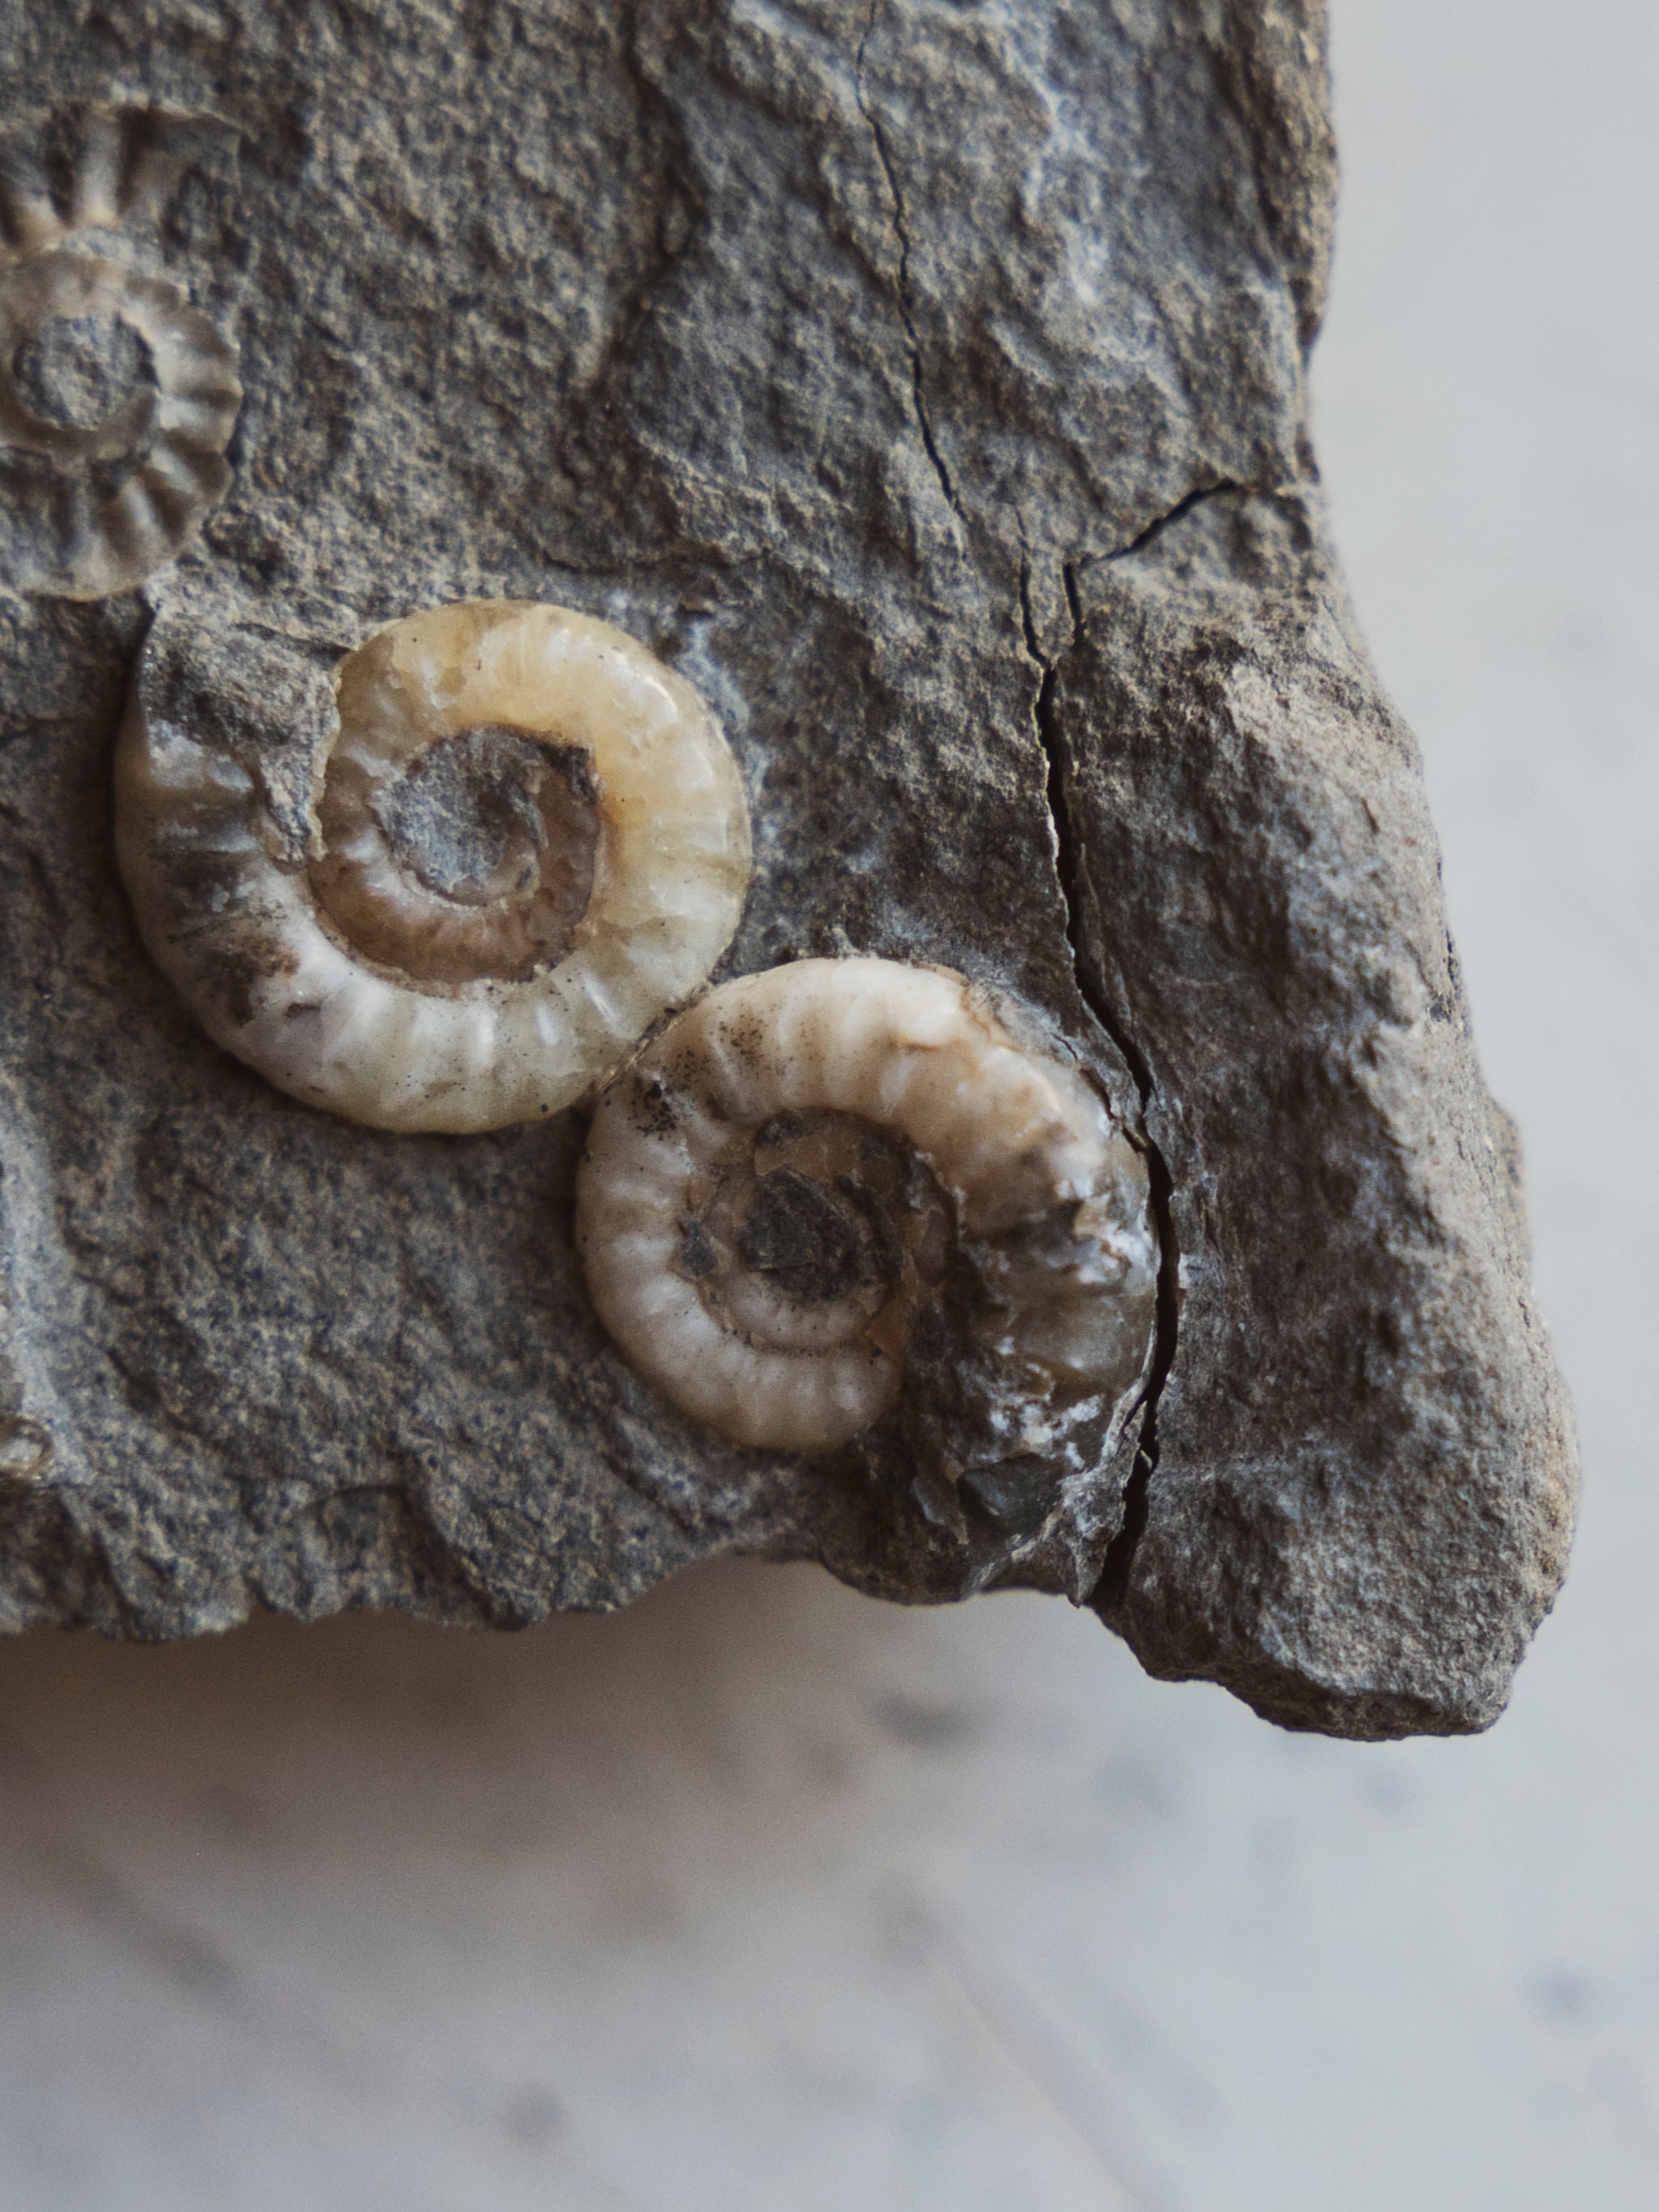 1" Fossilized Promicroceras Planicosta Ammonites In Matrix, RM96